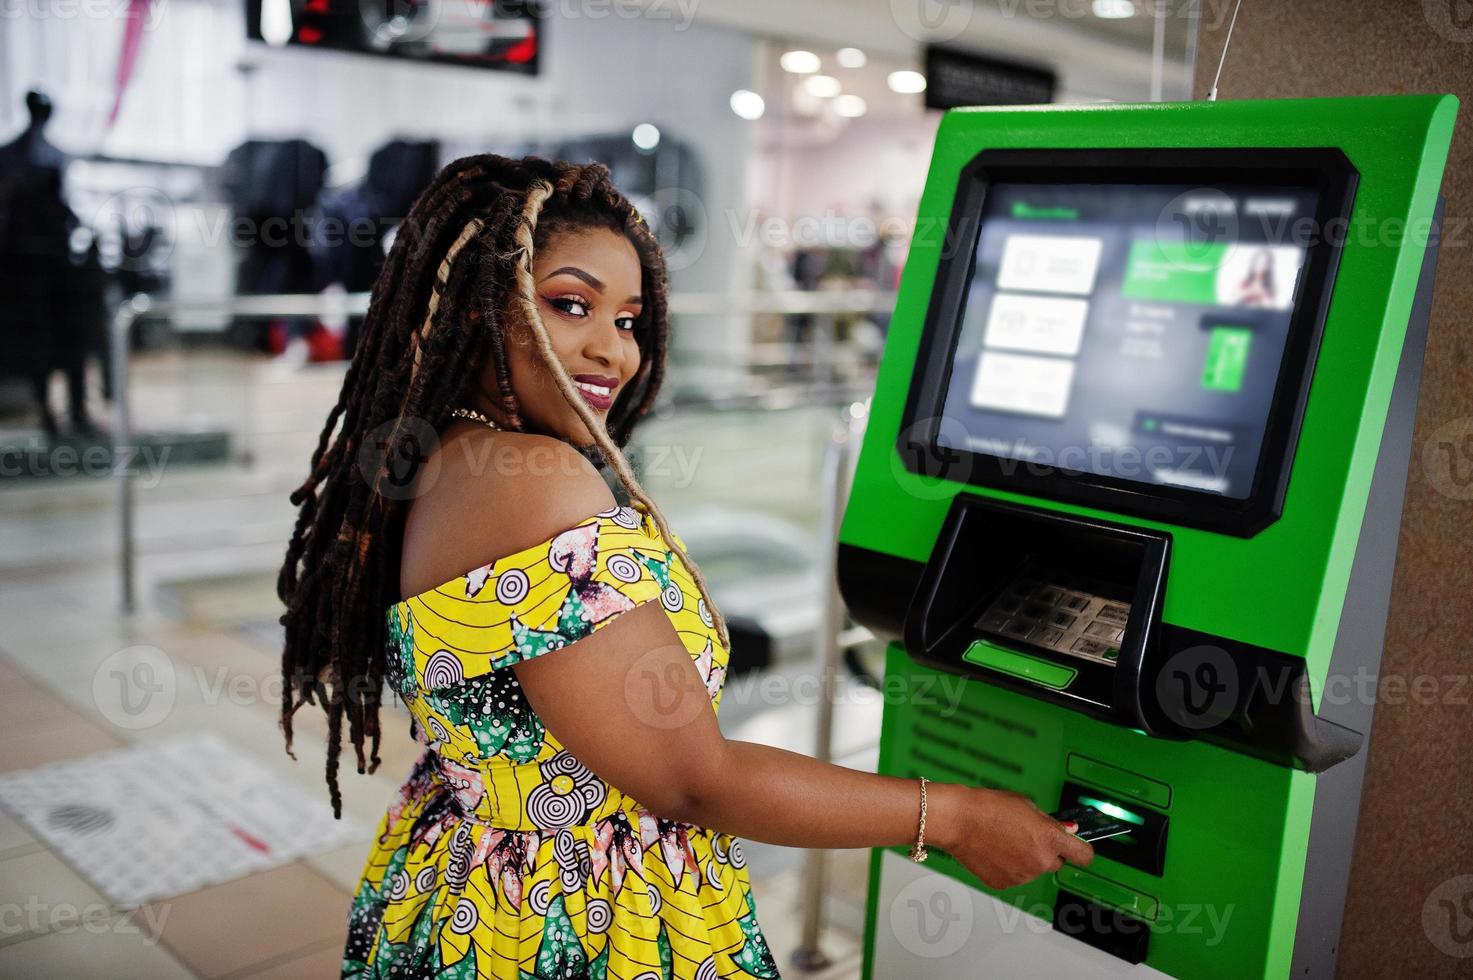 linda garota afro-americana de pequena altura com dreadlocks, use vestido amarelo colorido, contra caixa eletrônico com cartão de crédito na mão. foto